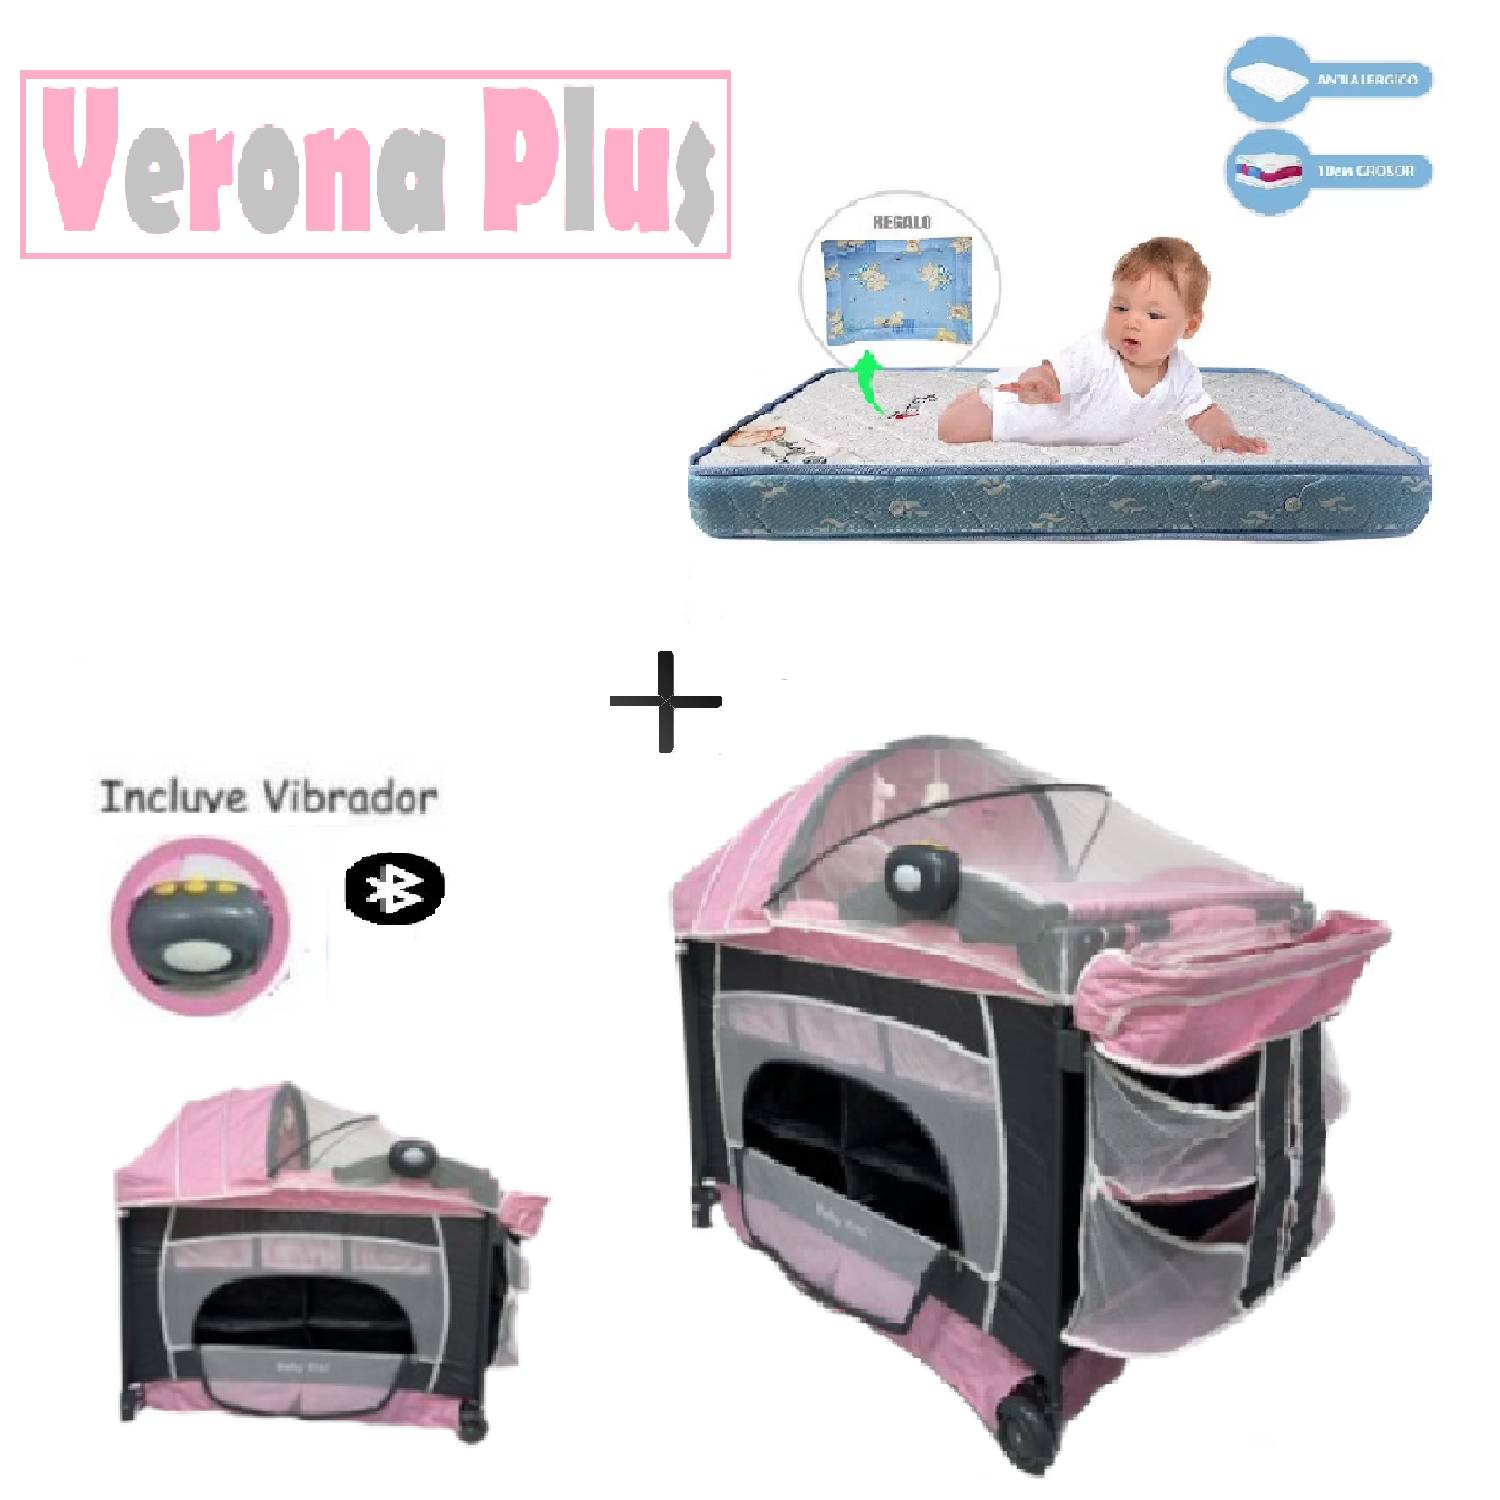 Cuna corral para bebe VERONA Plus vibrador BABY KITS